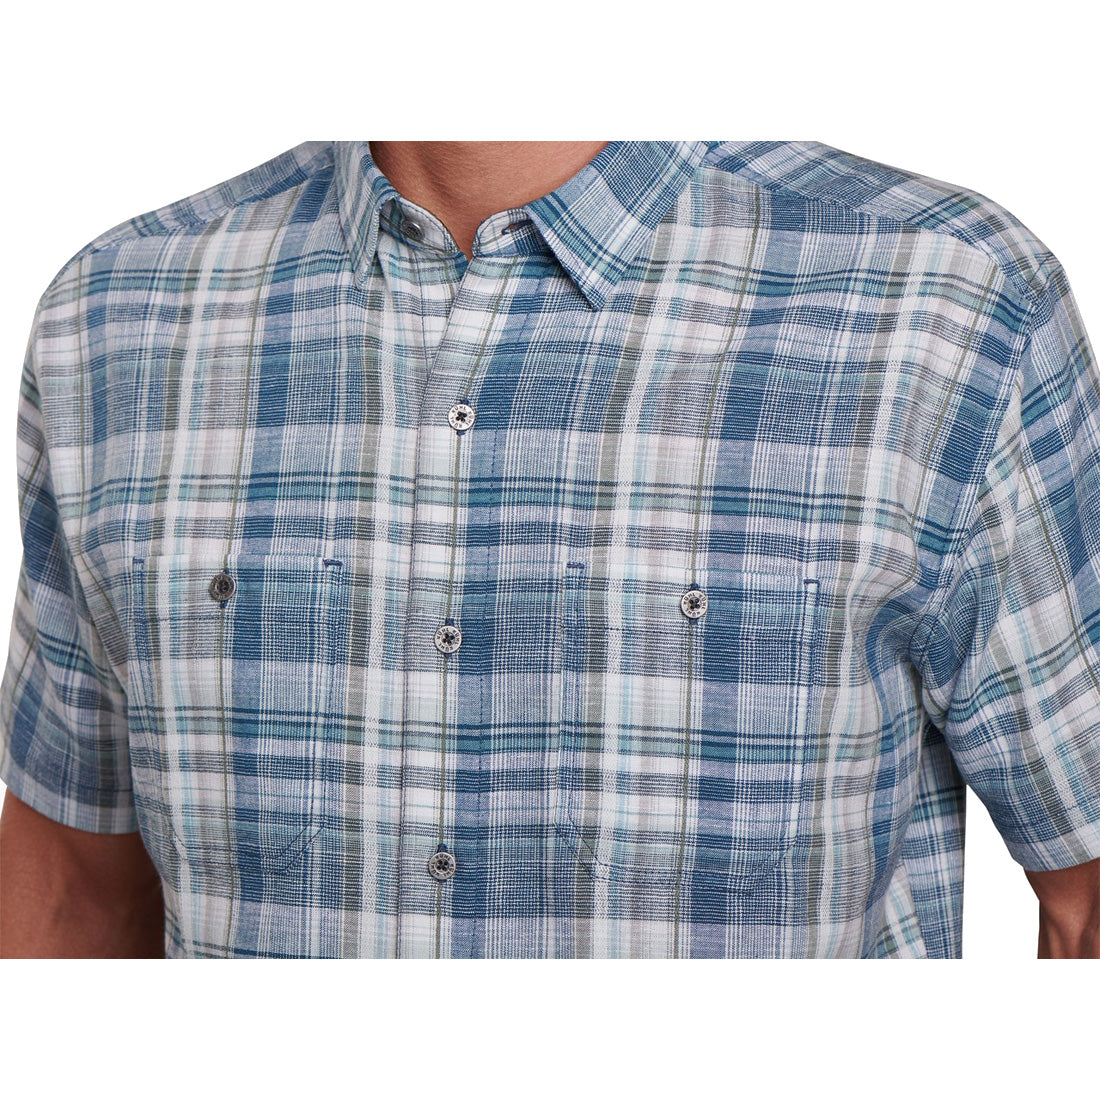 KUHL Skorpio Short Sleeve Shirt - Men's